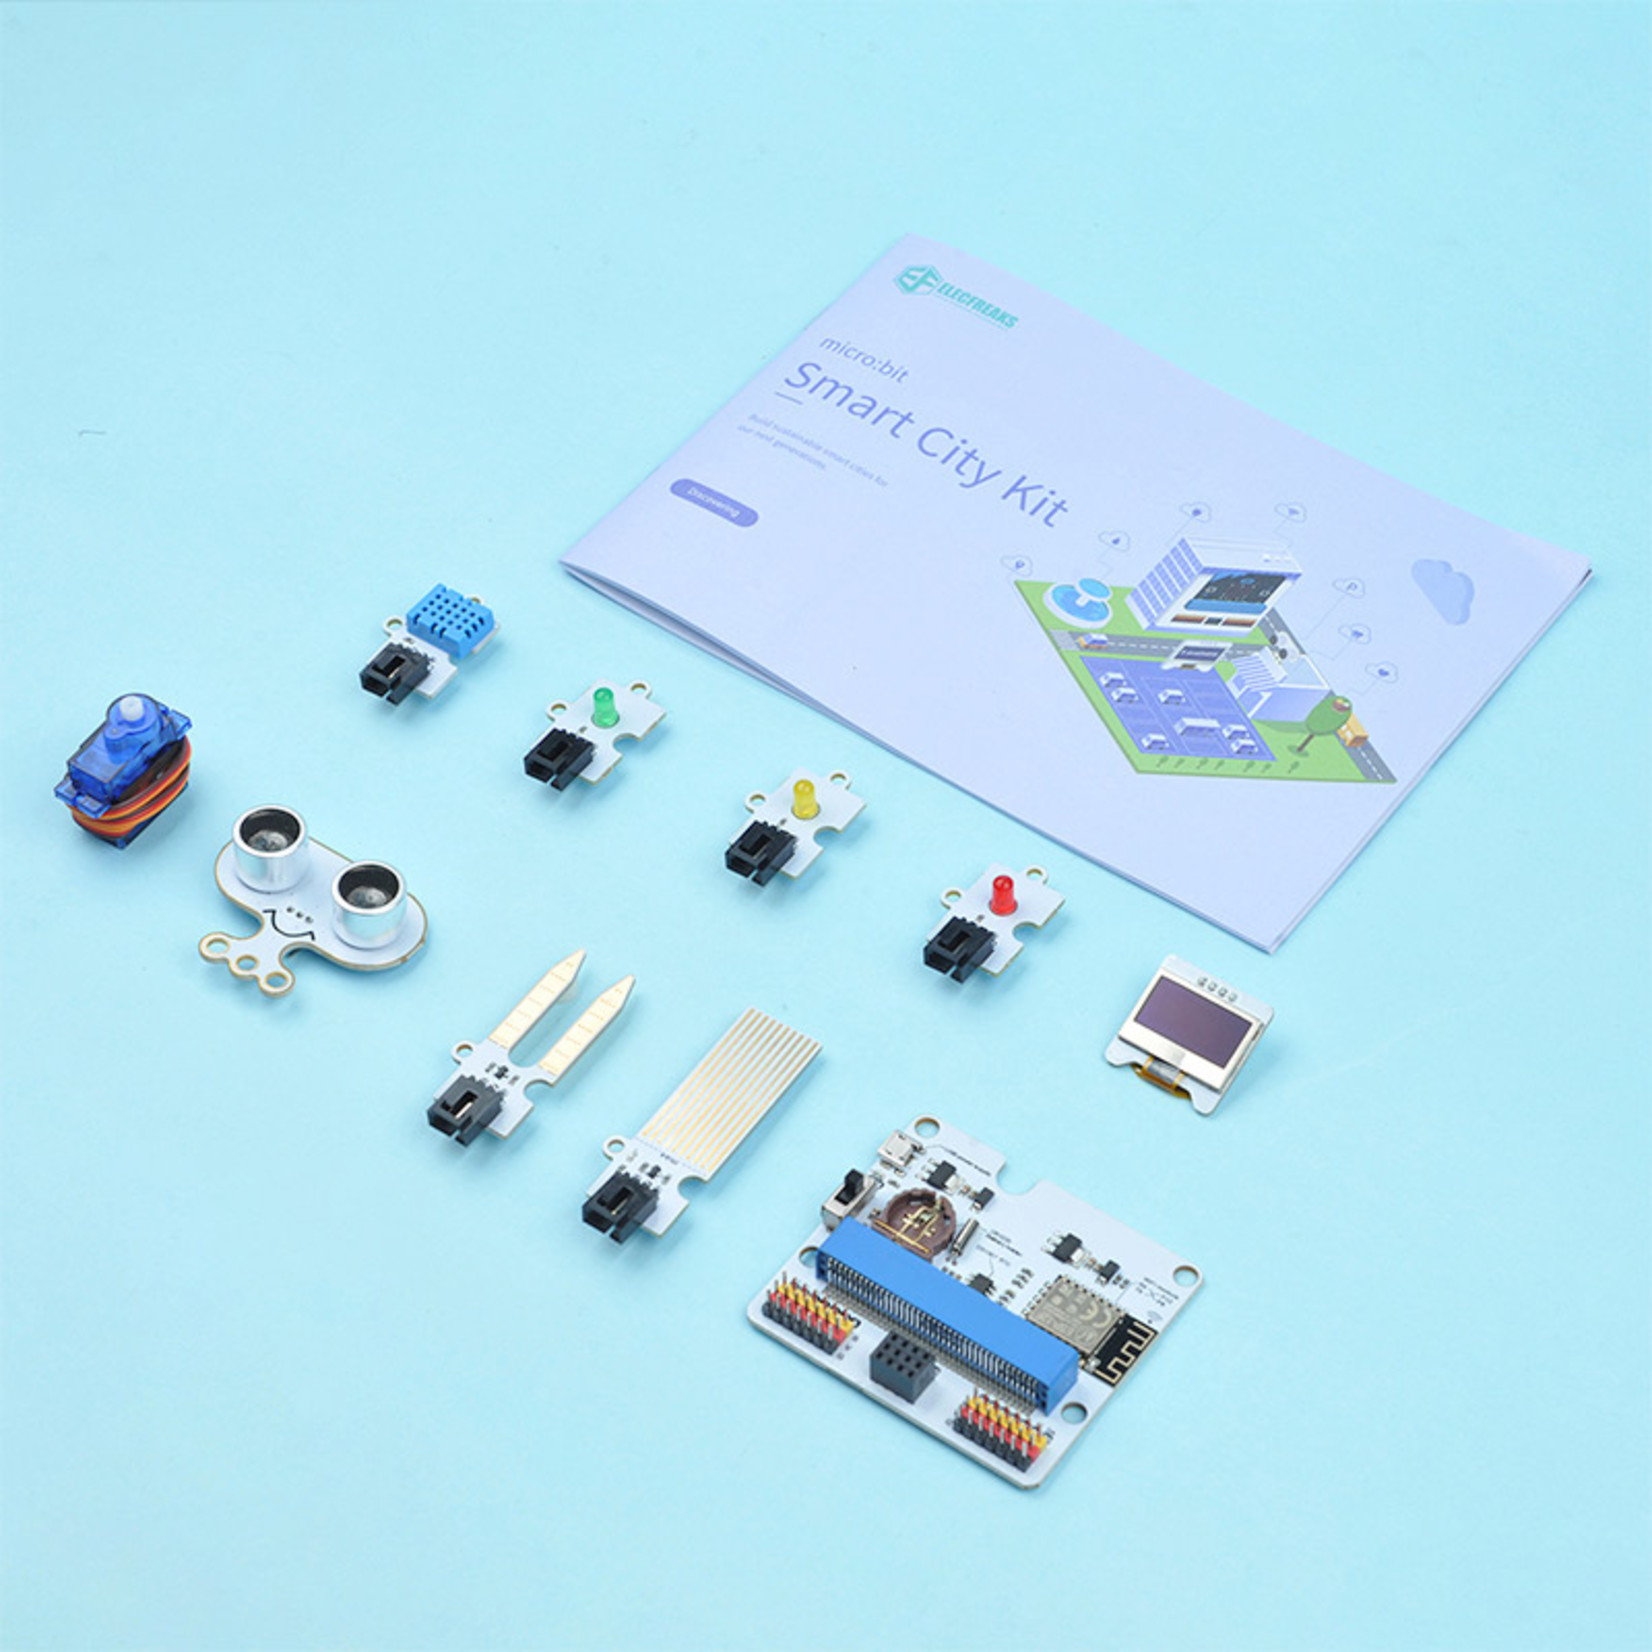 Elecfreaks Smart City Kit (micro:bit niet inbegrepen)